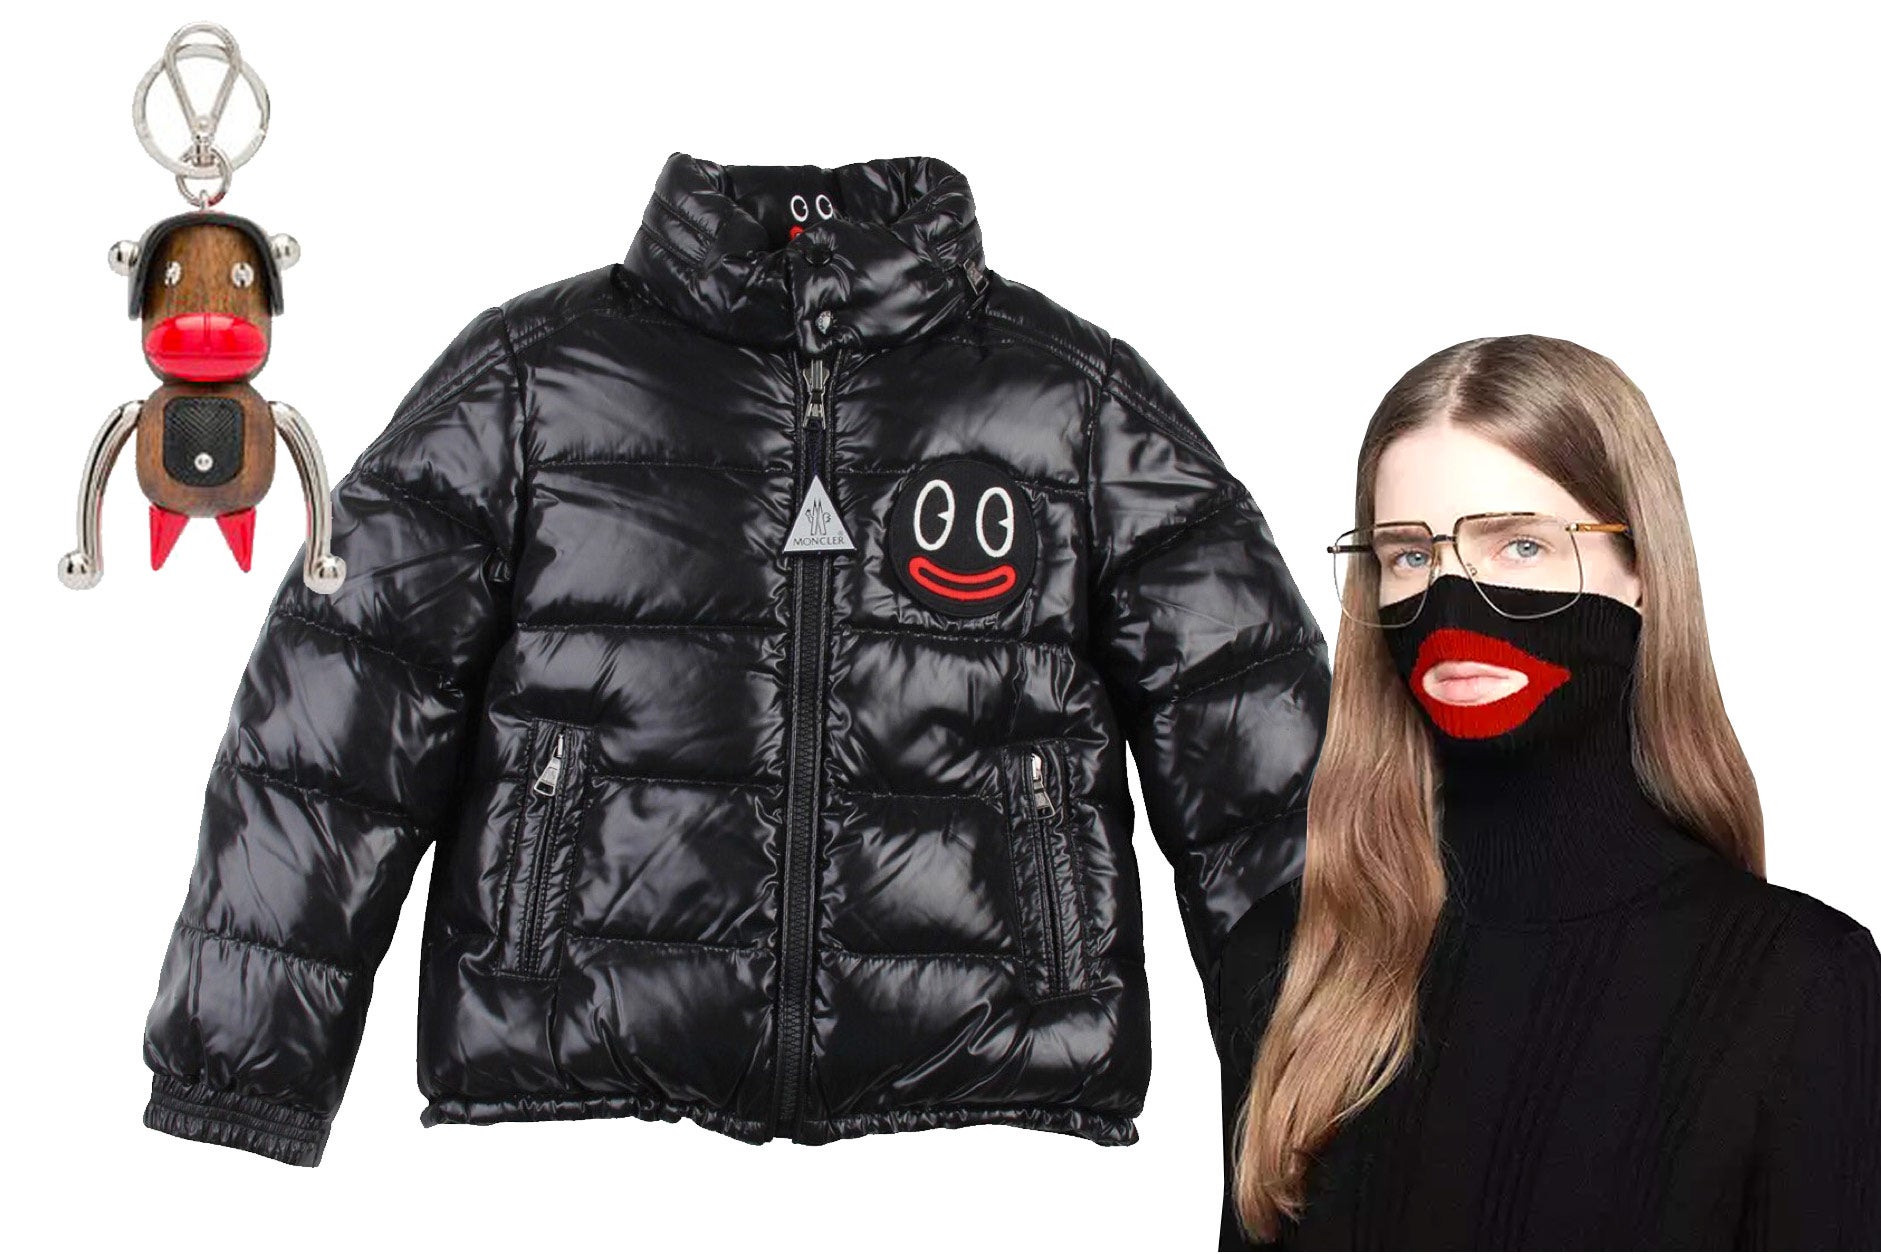 Gucci's blackface design controversy is 